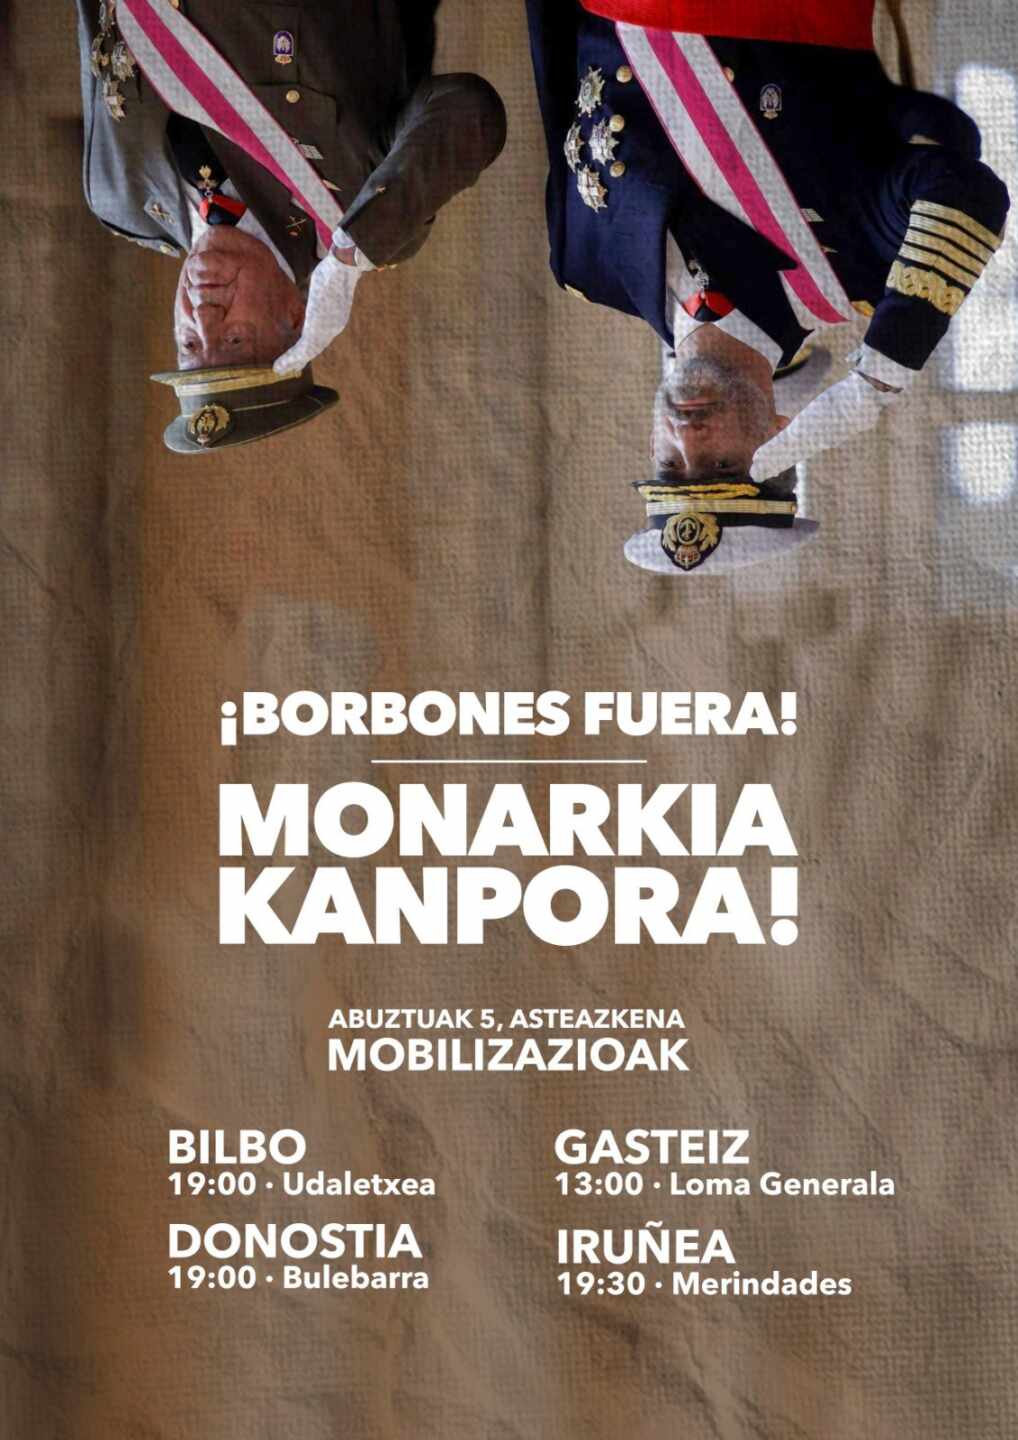 Bildu y Podemos convocan actos contra la monarquía en Euskadi